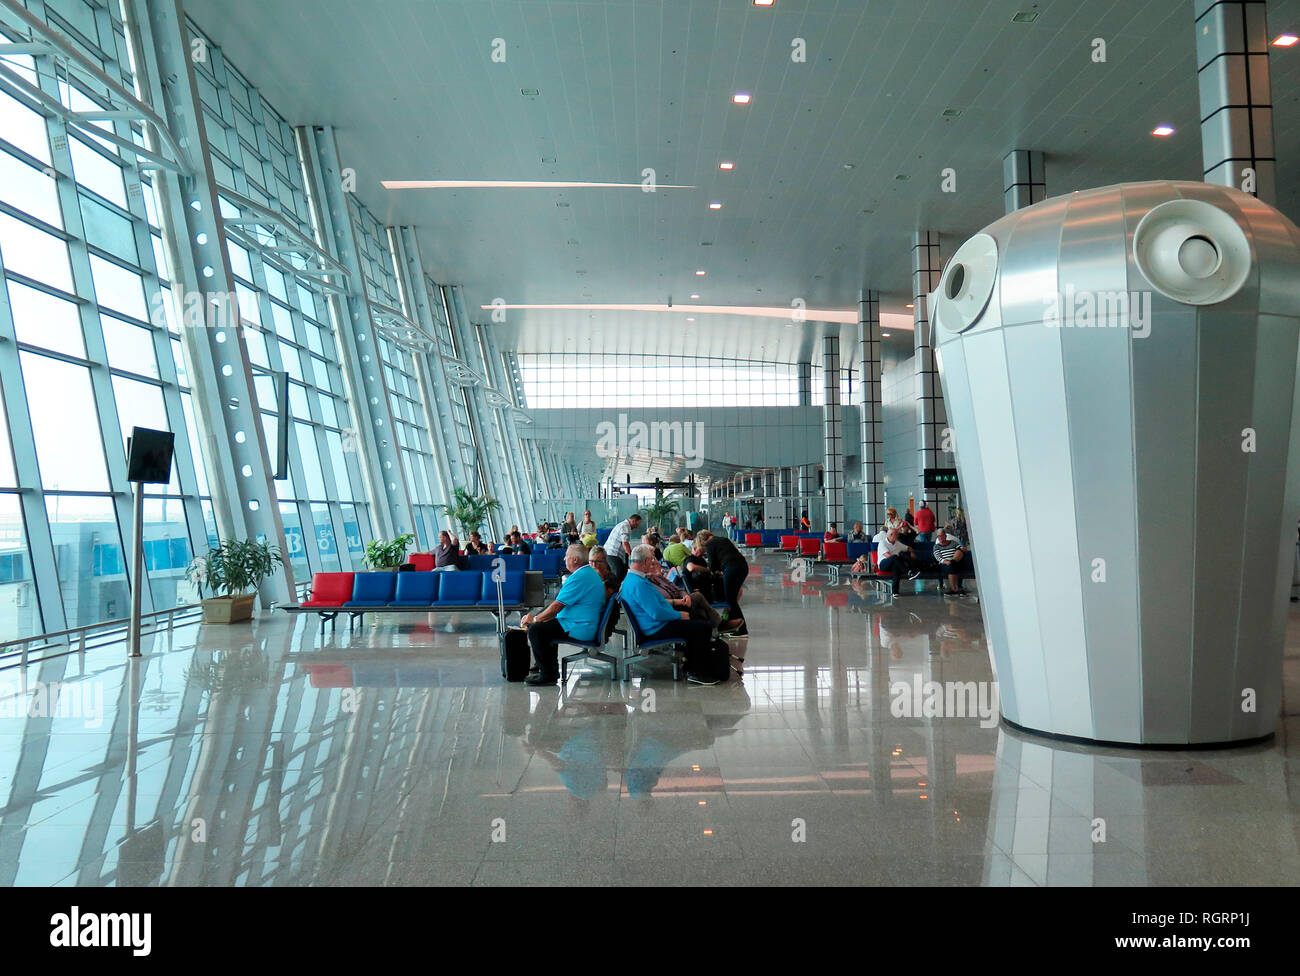 Wartebereich, Flughafen, Hurghada, Aegypten Stock Photo